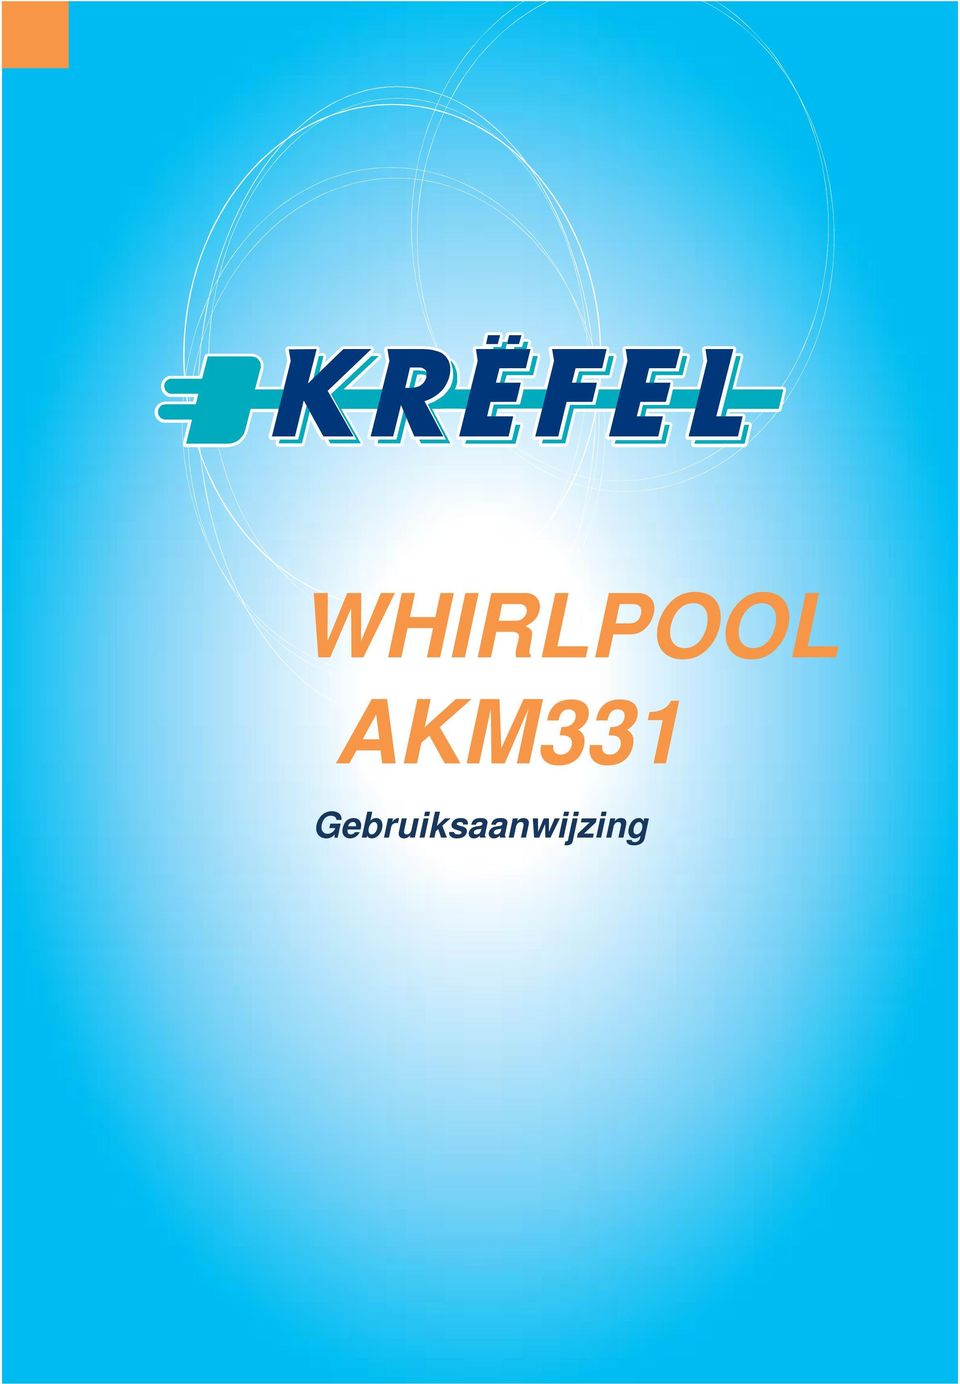 WHIRLPOOL AKM331. Gebruiksaanwijzing - PDF Free Download